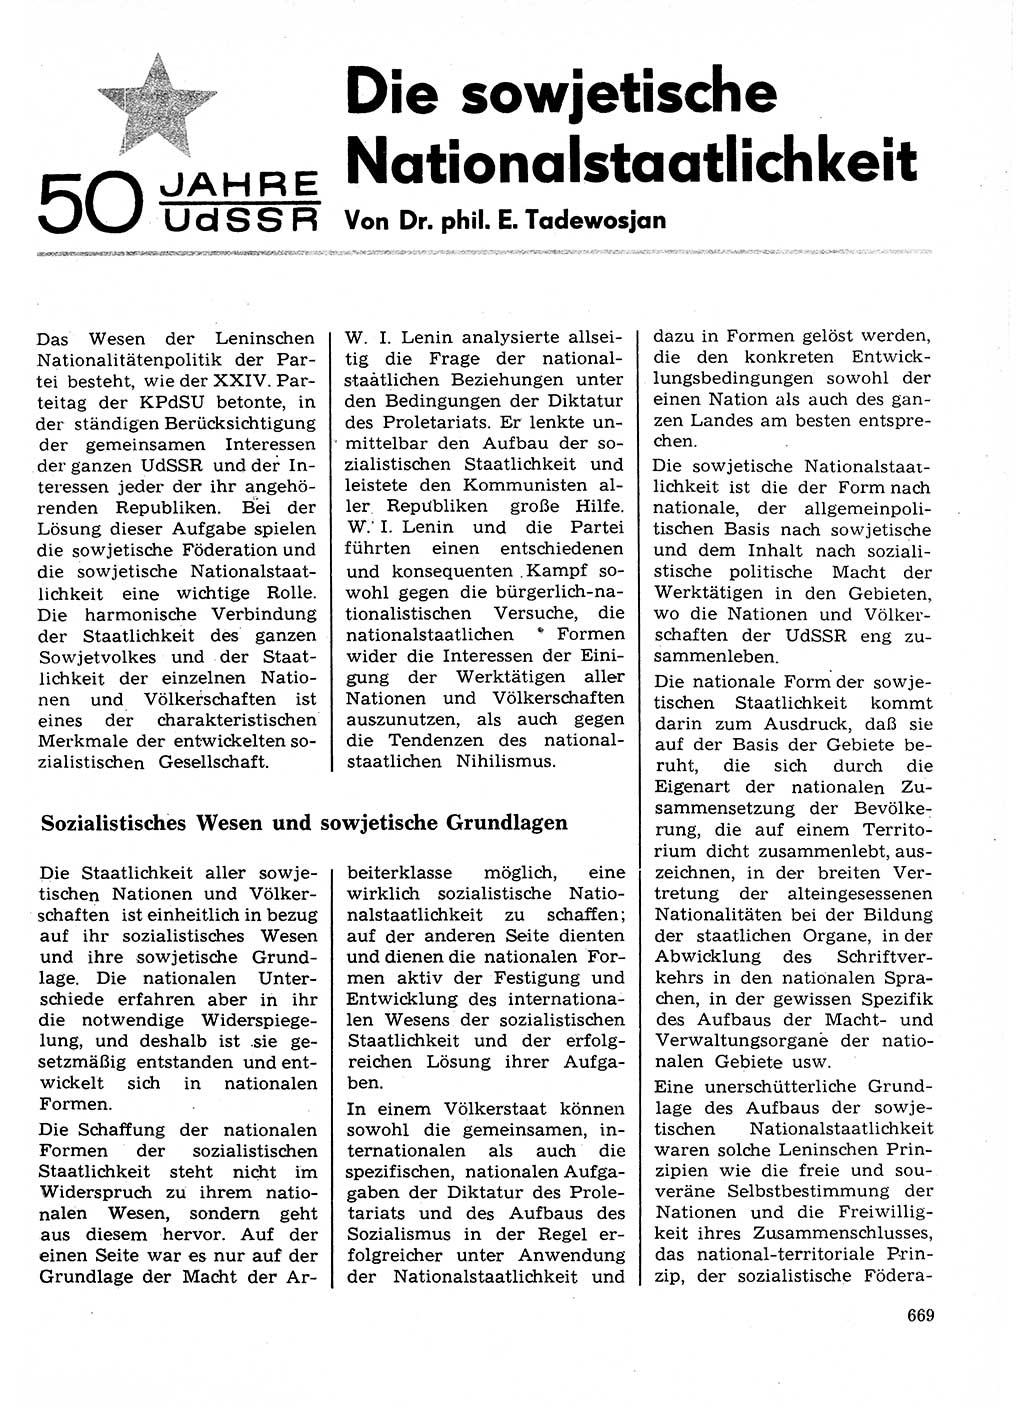 Neuer Weg (NW), Organ des Zentralkomitees (ZK) der SED (Sozialistische Einheitspartei Deutschlands) für Fragen des Parteilebens, 27. Jahrgang [Deutsche Demokratische Republik (DDR)] 1972, Seite 669 (NW ZK SED DDR 1972, S. 669)